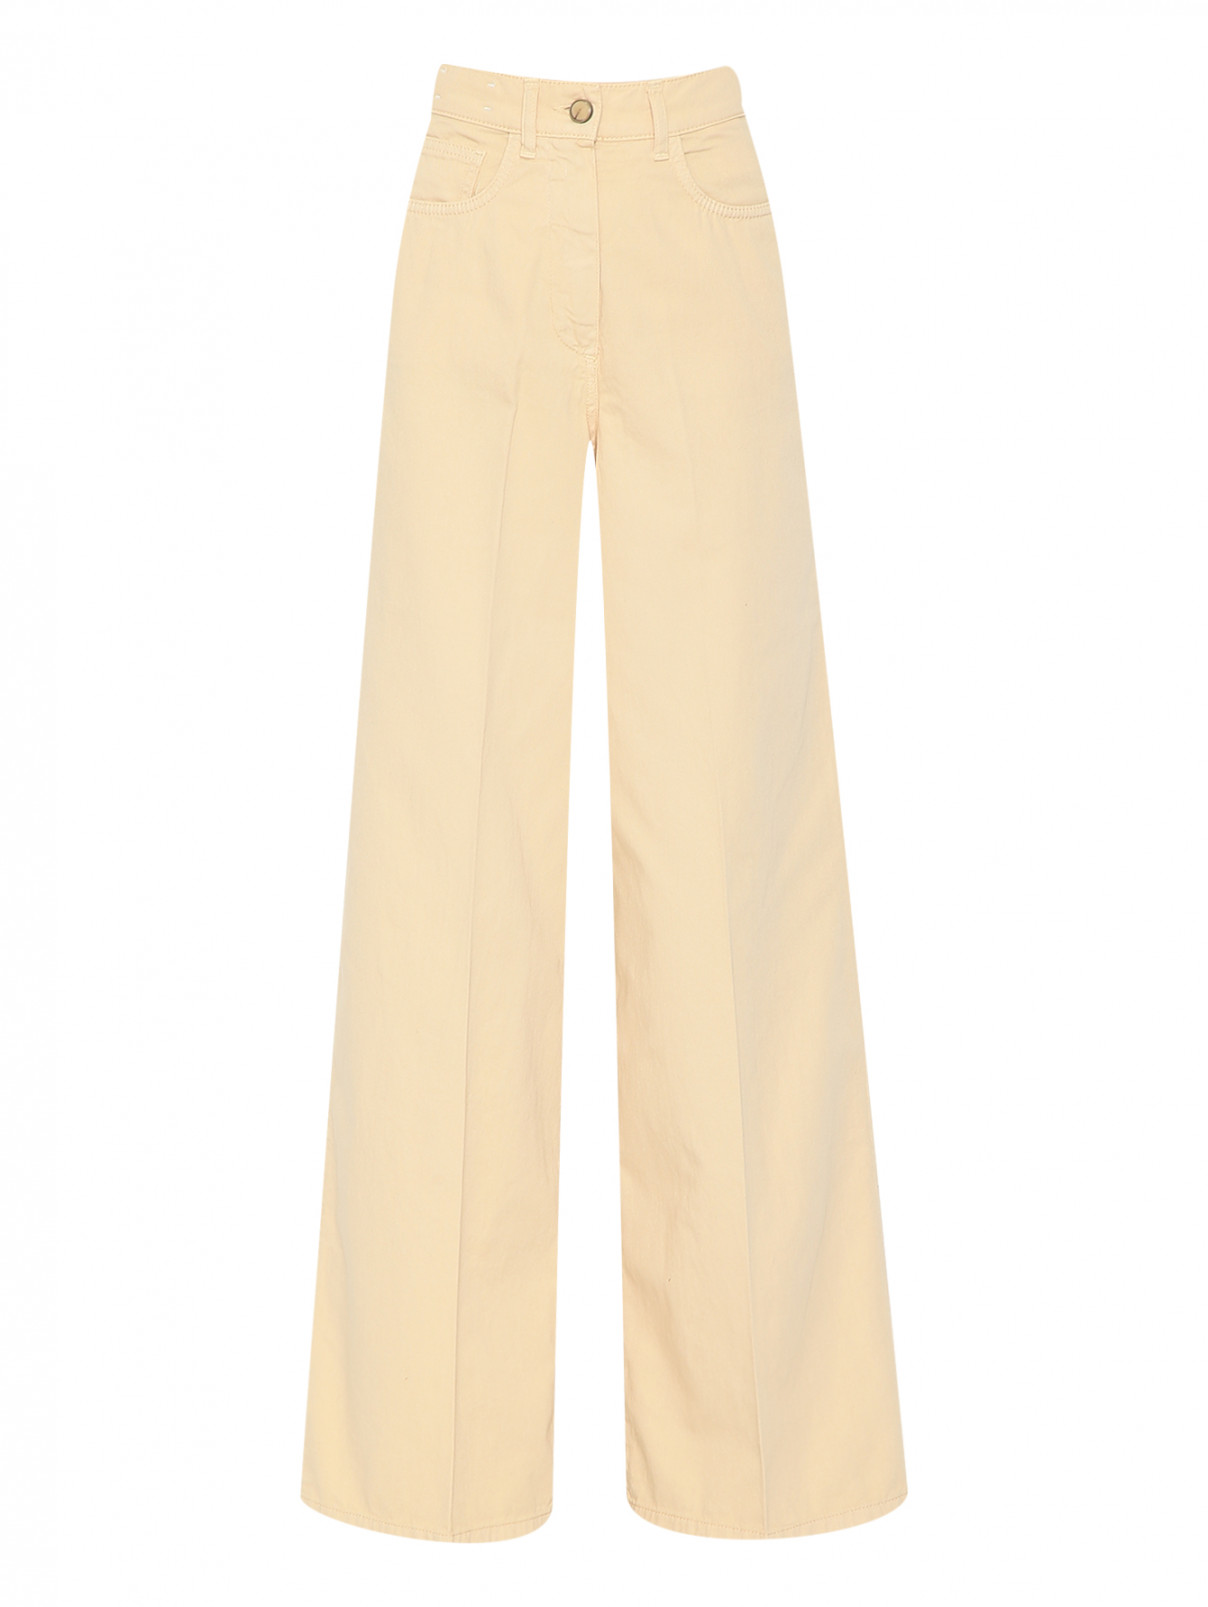 Широкие брюки из хлопка Alysi  –  Общий вид  – Цвет:  Желтый